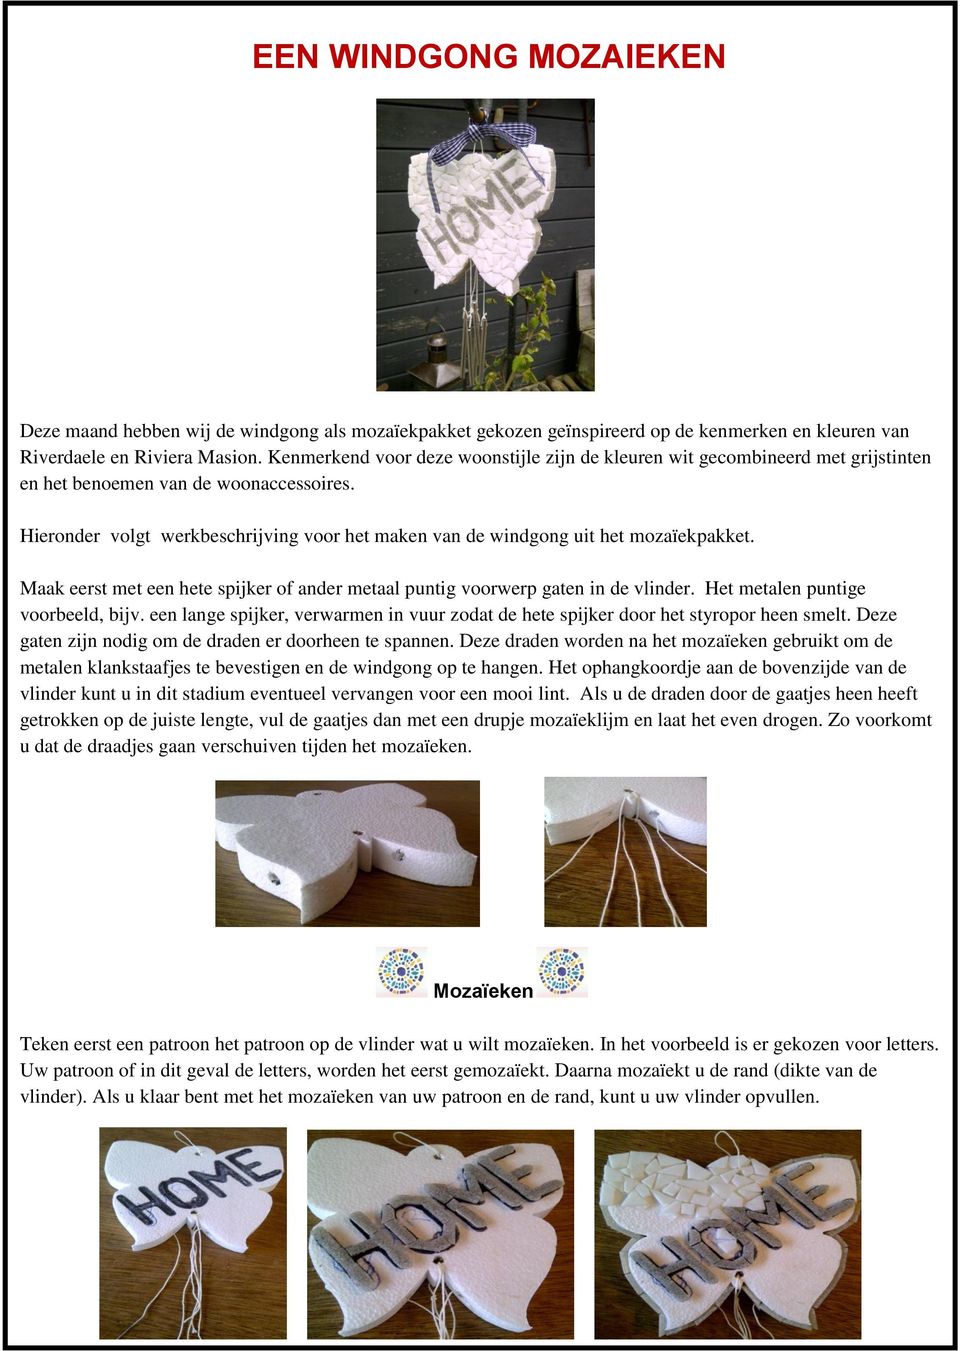 Hieronder volgt werkbeschrijving voor het maken van de windgong uit het mozaïekpakket. Maak eerst met een hete spijker of ander metaal puntig voorwerp gaten in de vlinder.